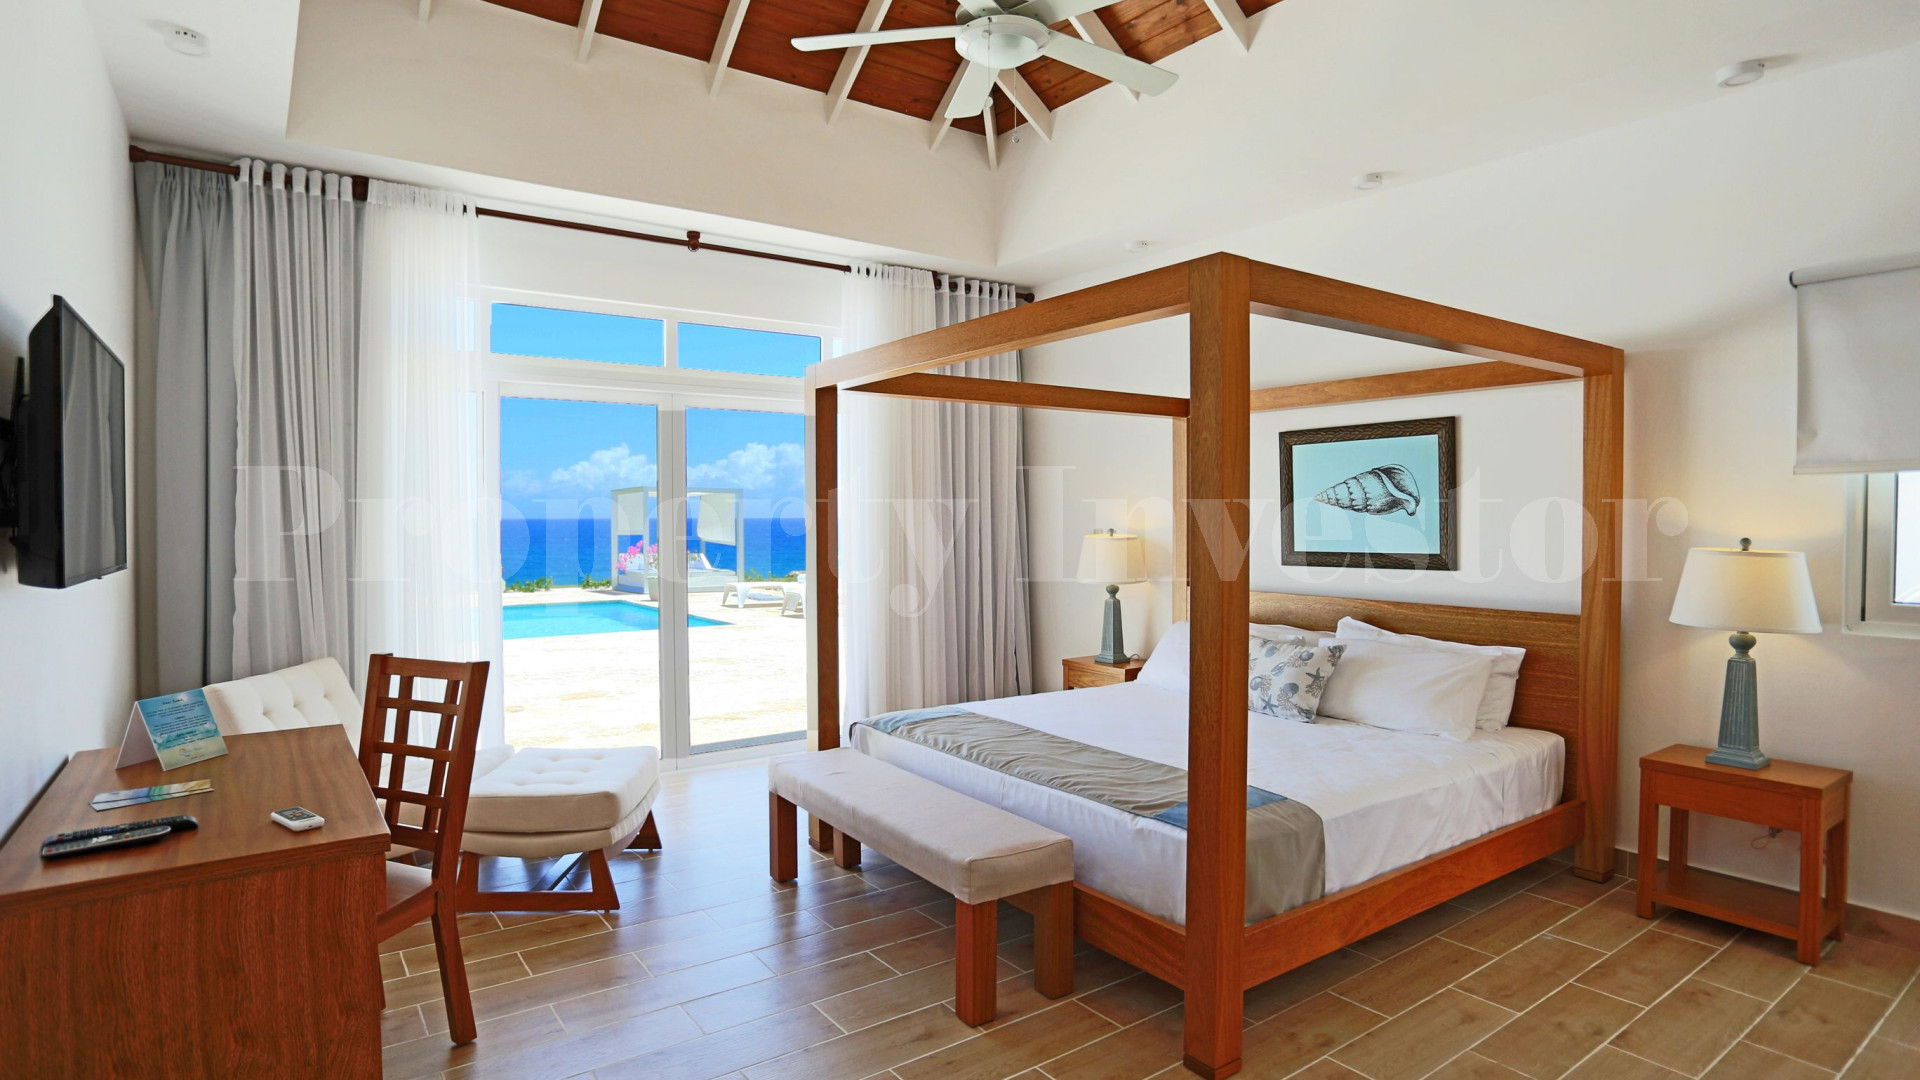 Вилла с 3 спальнями на берегу моря в Доминиканской Республике с финансирование на 30 лет (Вилла 4)